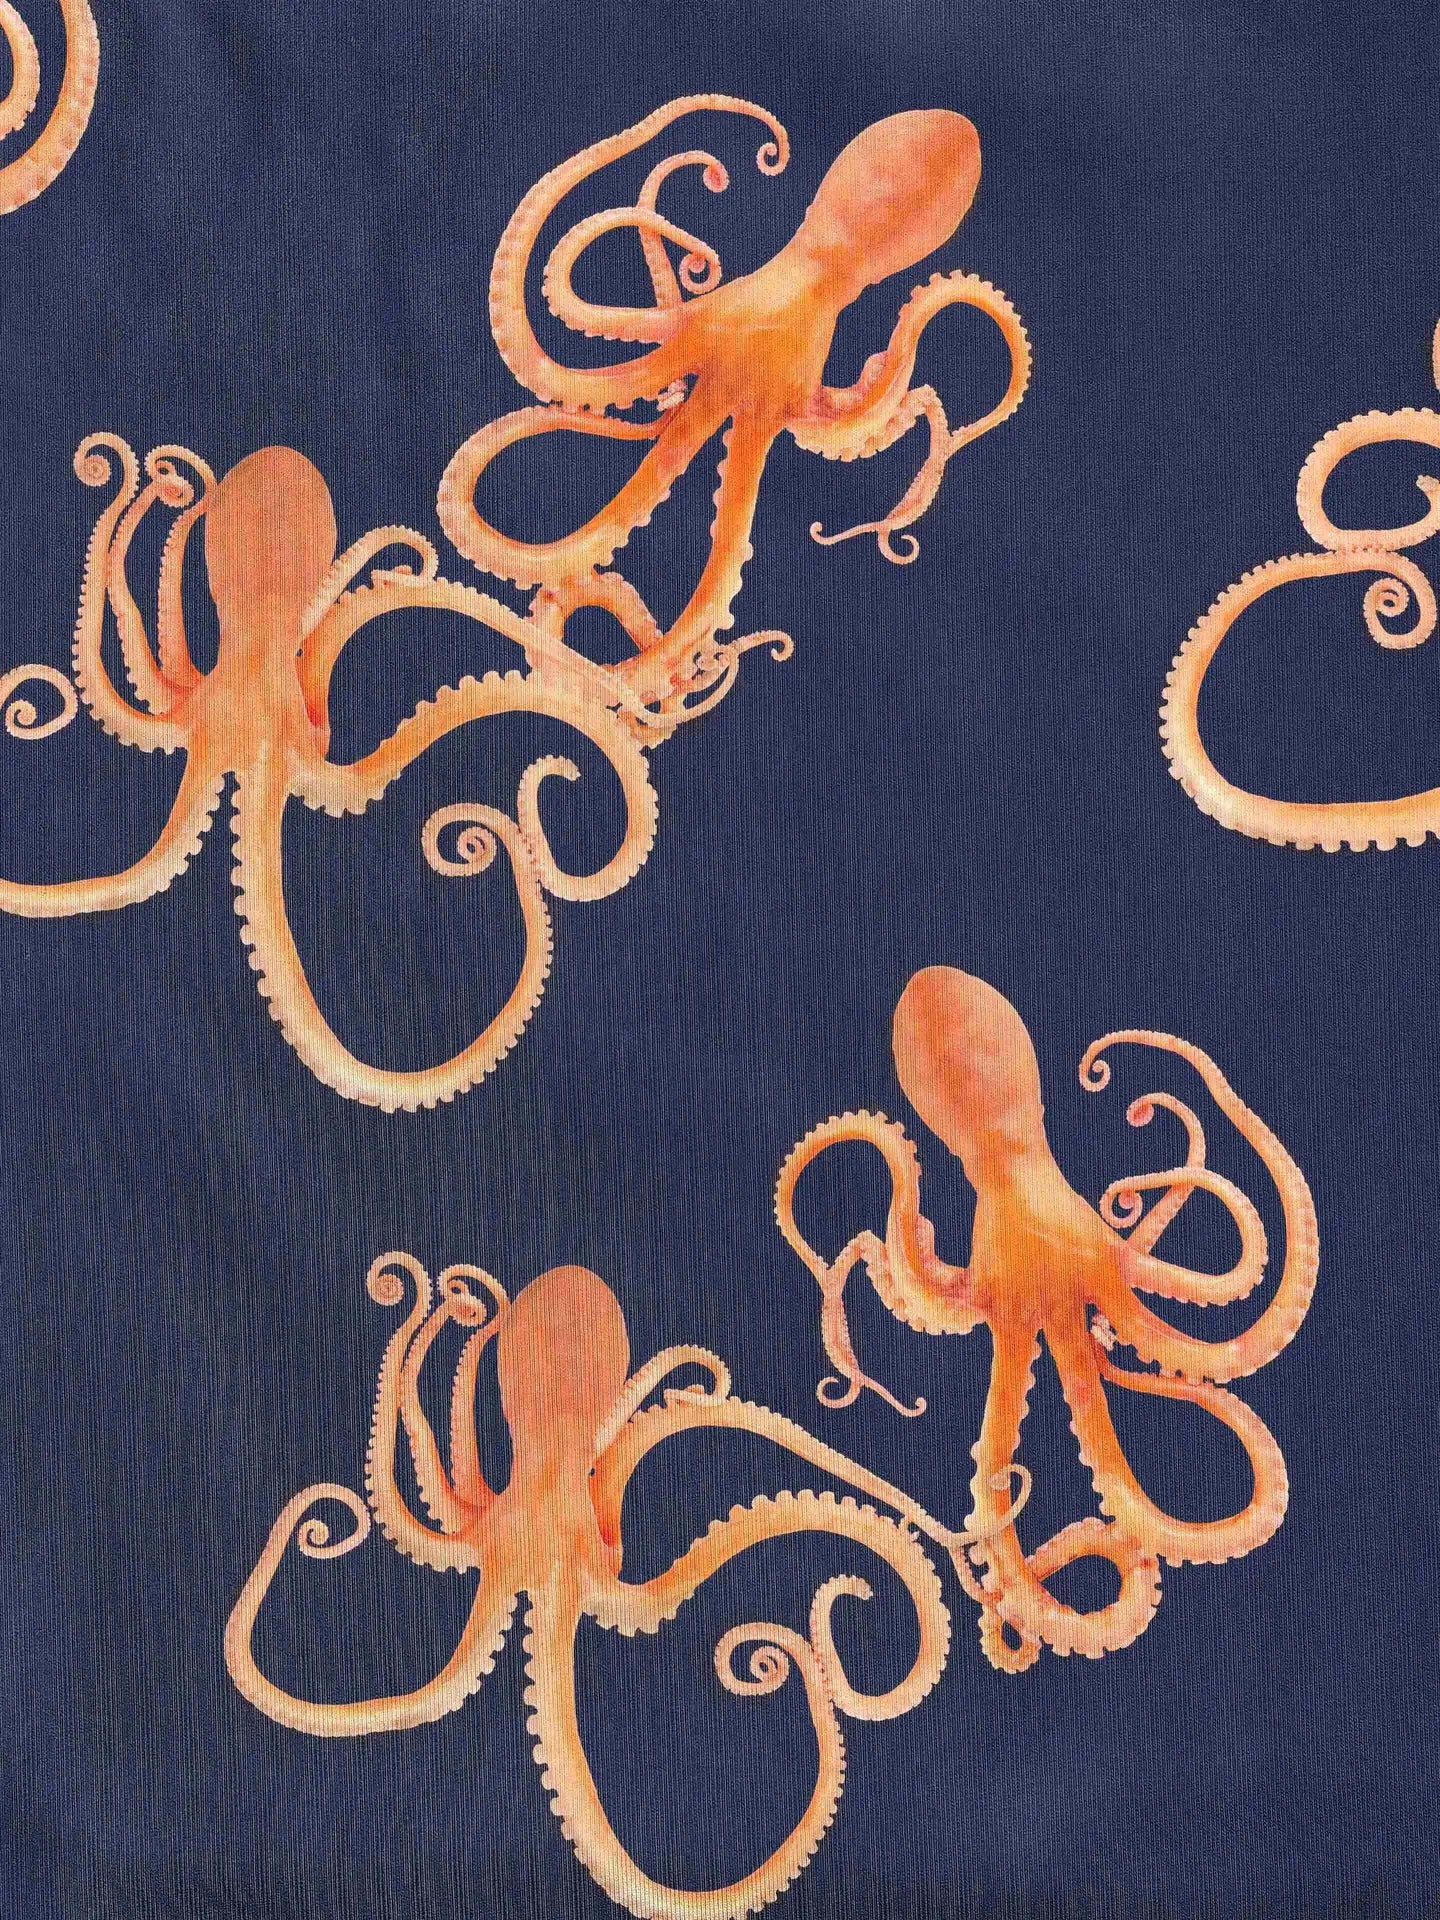 Octopus V-neck T-shirt en Korte Broek set Dames - SNURK